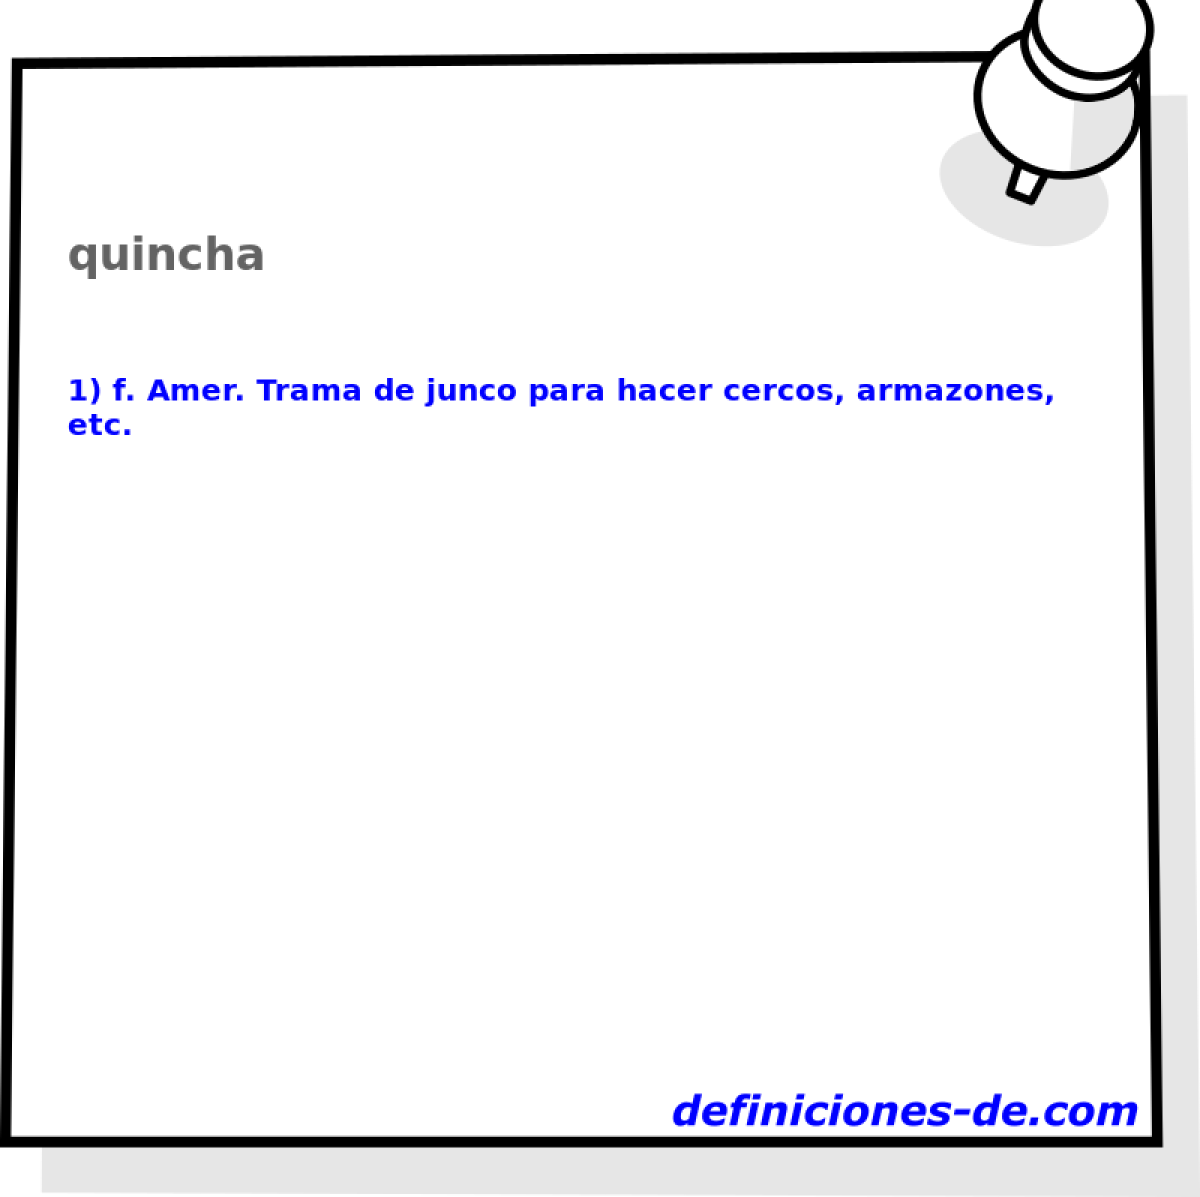 quincha 